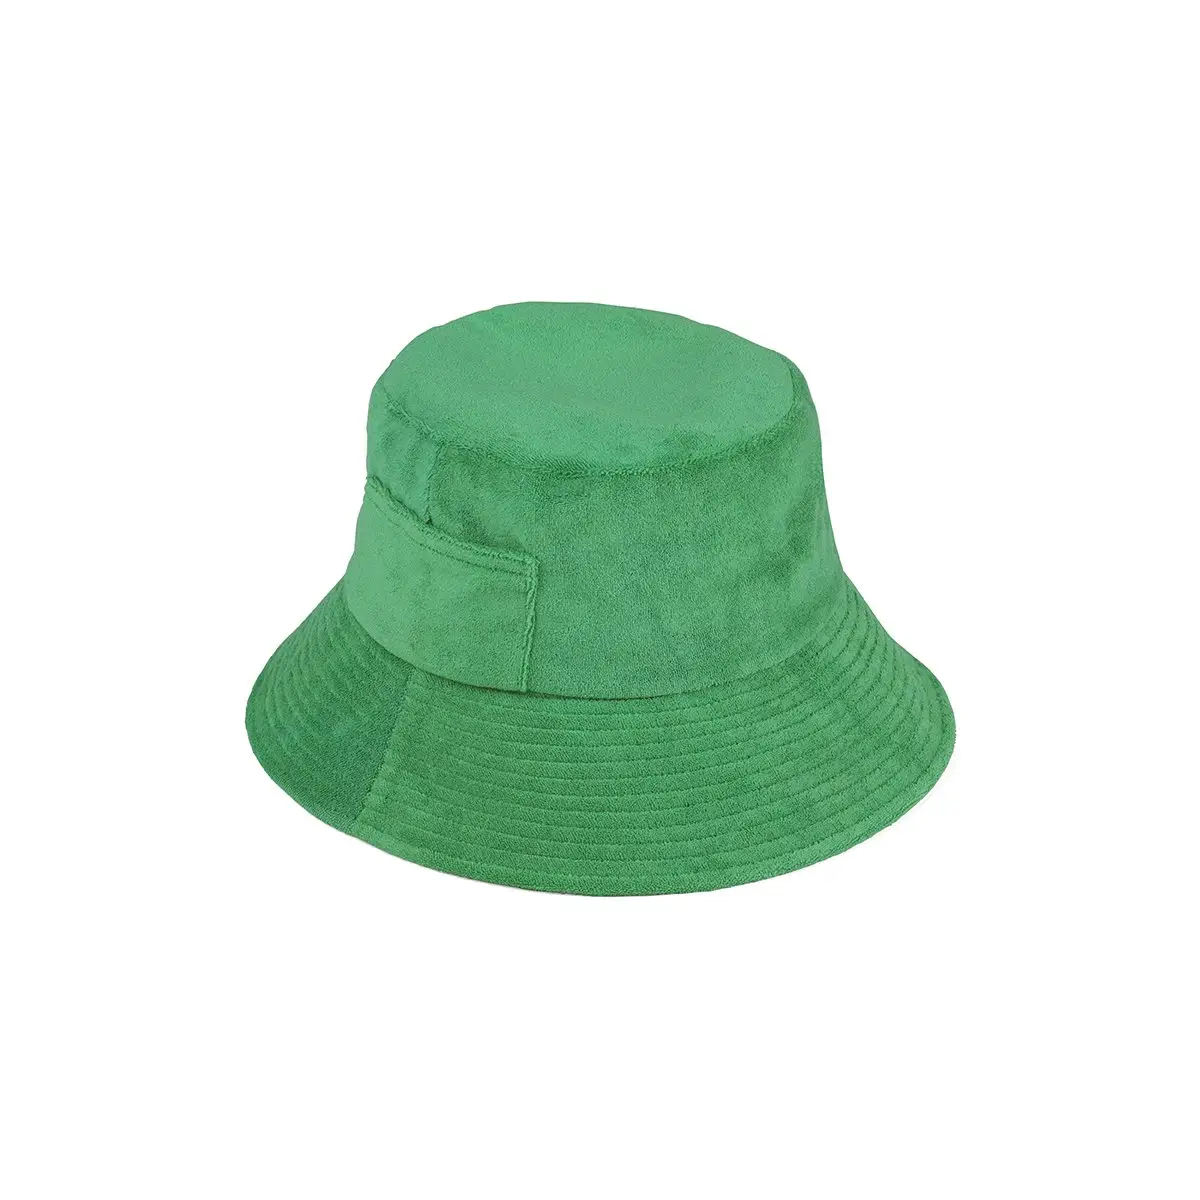 หมวกทรงถังมีกระเป๋าของผู้หญิง,หมวกทรงคลื่นพับได้ป้ายผ้าสำหรับใส่ผ้าเช็ดตัวเทอร์รี่สีเขียวมีสไตล์ตามสั่ง